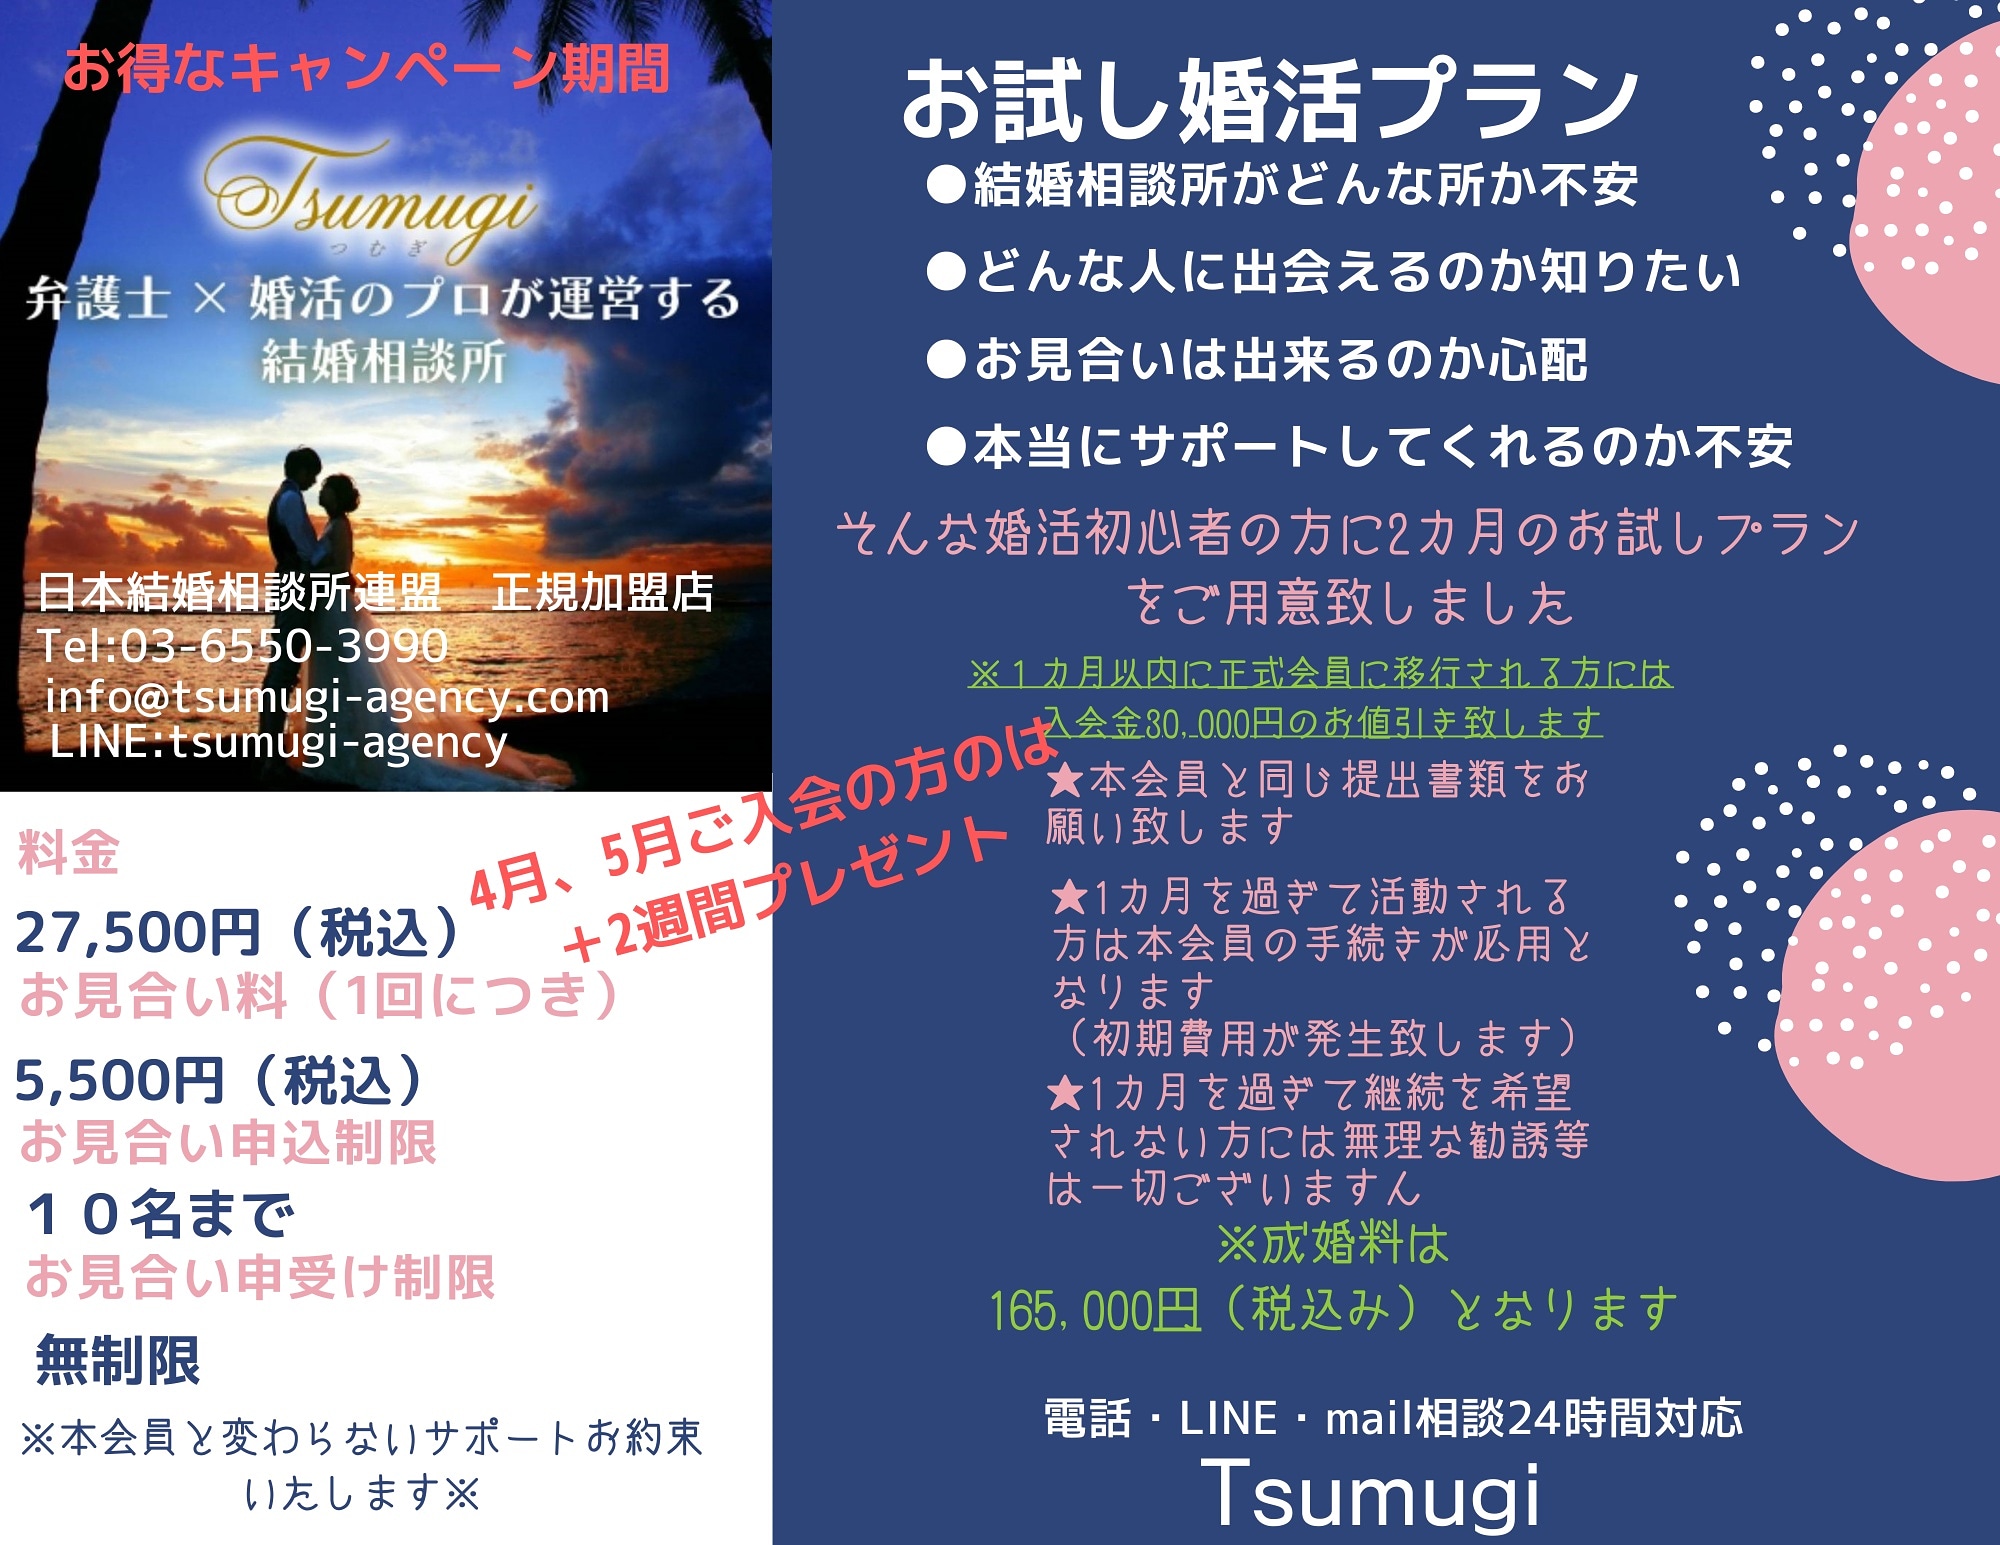 楽しく婚活 人と人のご縁を結びます 結婚相談所 Tsumugi Tsumugi Agency Twitter